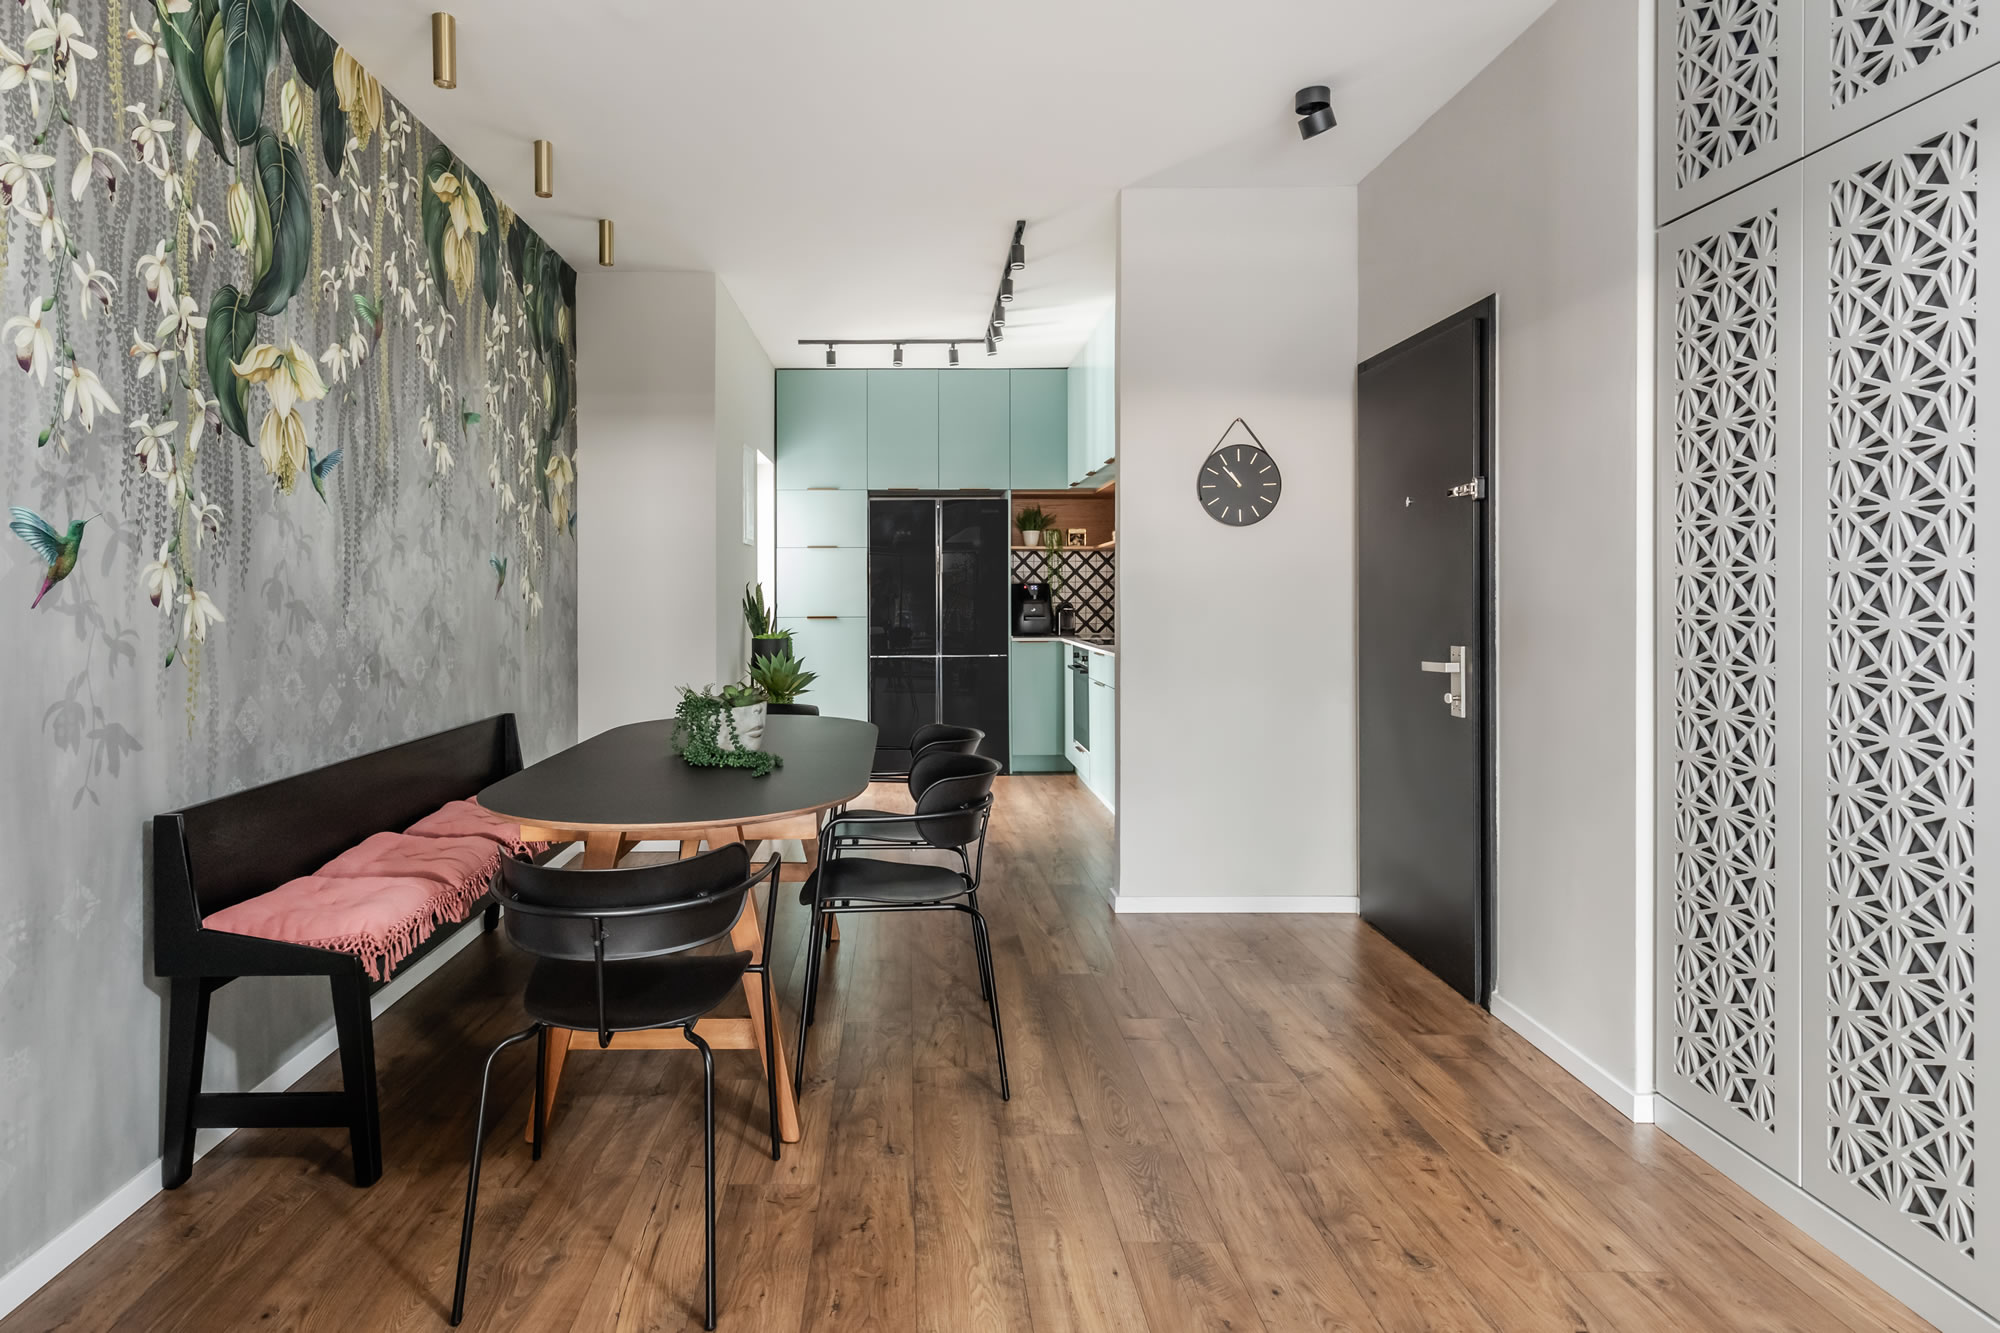 עיצוב ותכנון של המעצבת מיקה אלטר הפך דירת קבלן רגילה לדירה מפנקת ויחודית מעוצבת בסגנון בוהו צבעוני